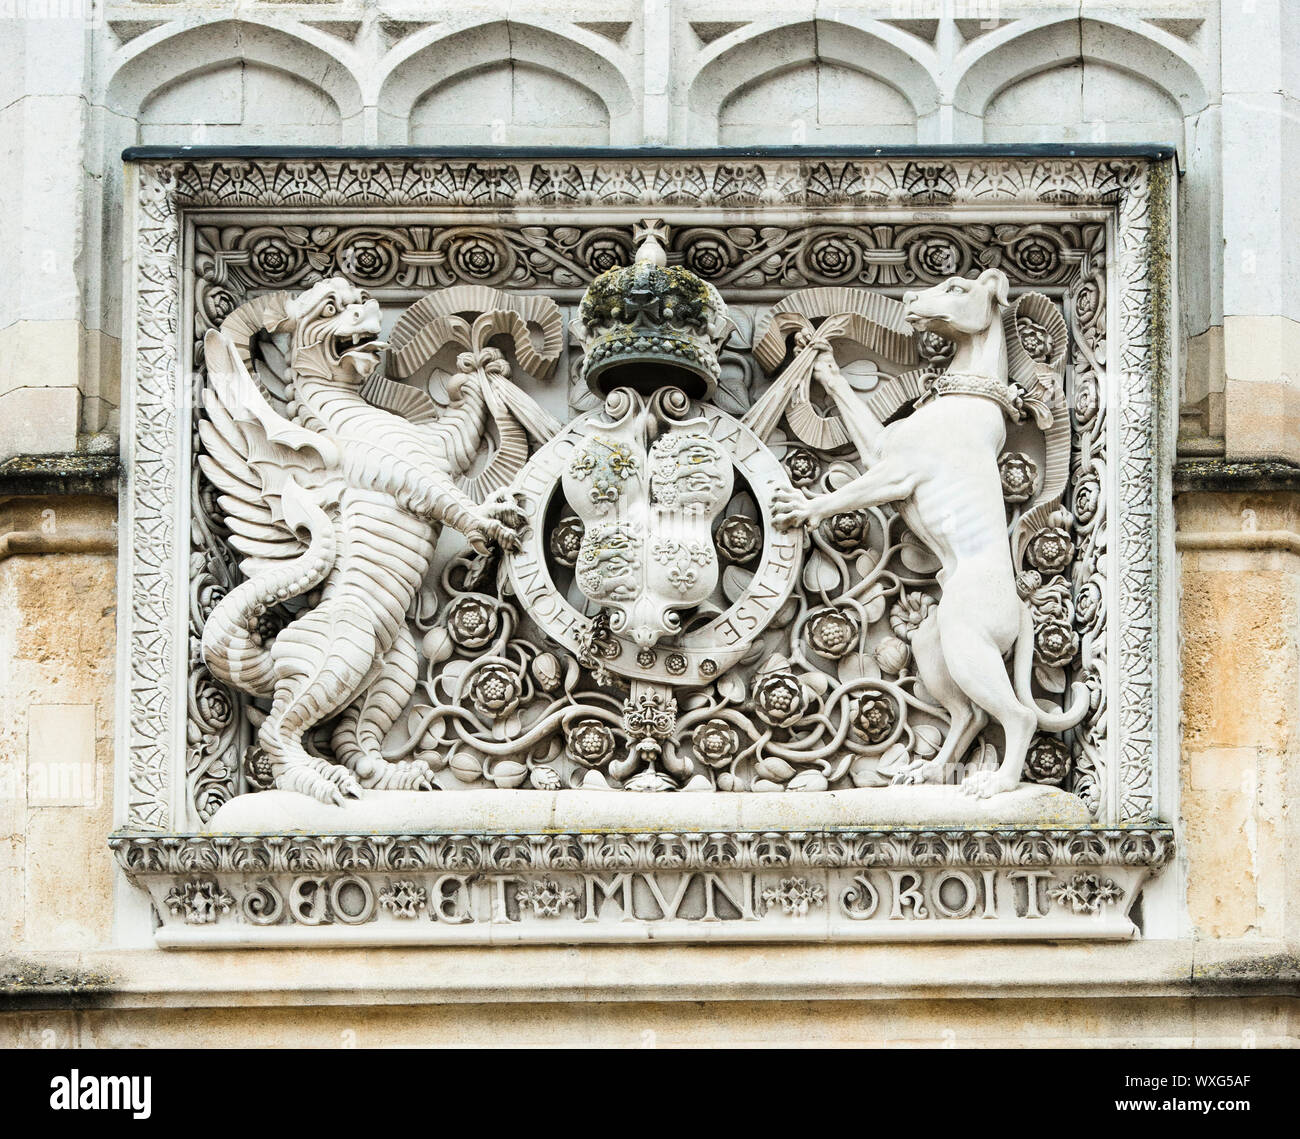 Armoiries royales sculptées en pierre de Henry VIII, au-dessus de l'entrée de Hampton Court Palace, le trophée, la porte d'entrée principale Gatehouse. Banque D'Images